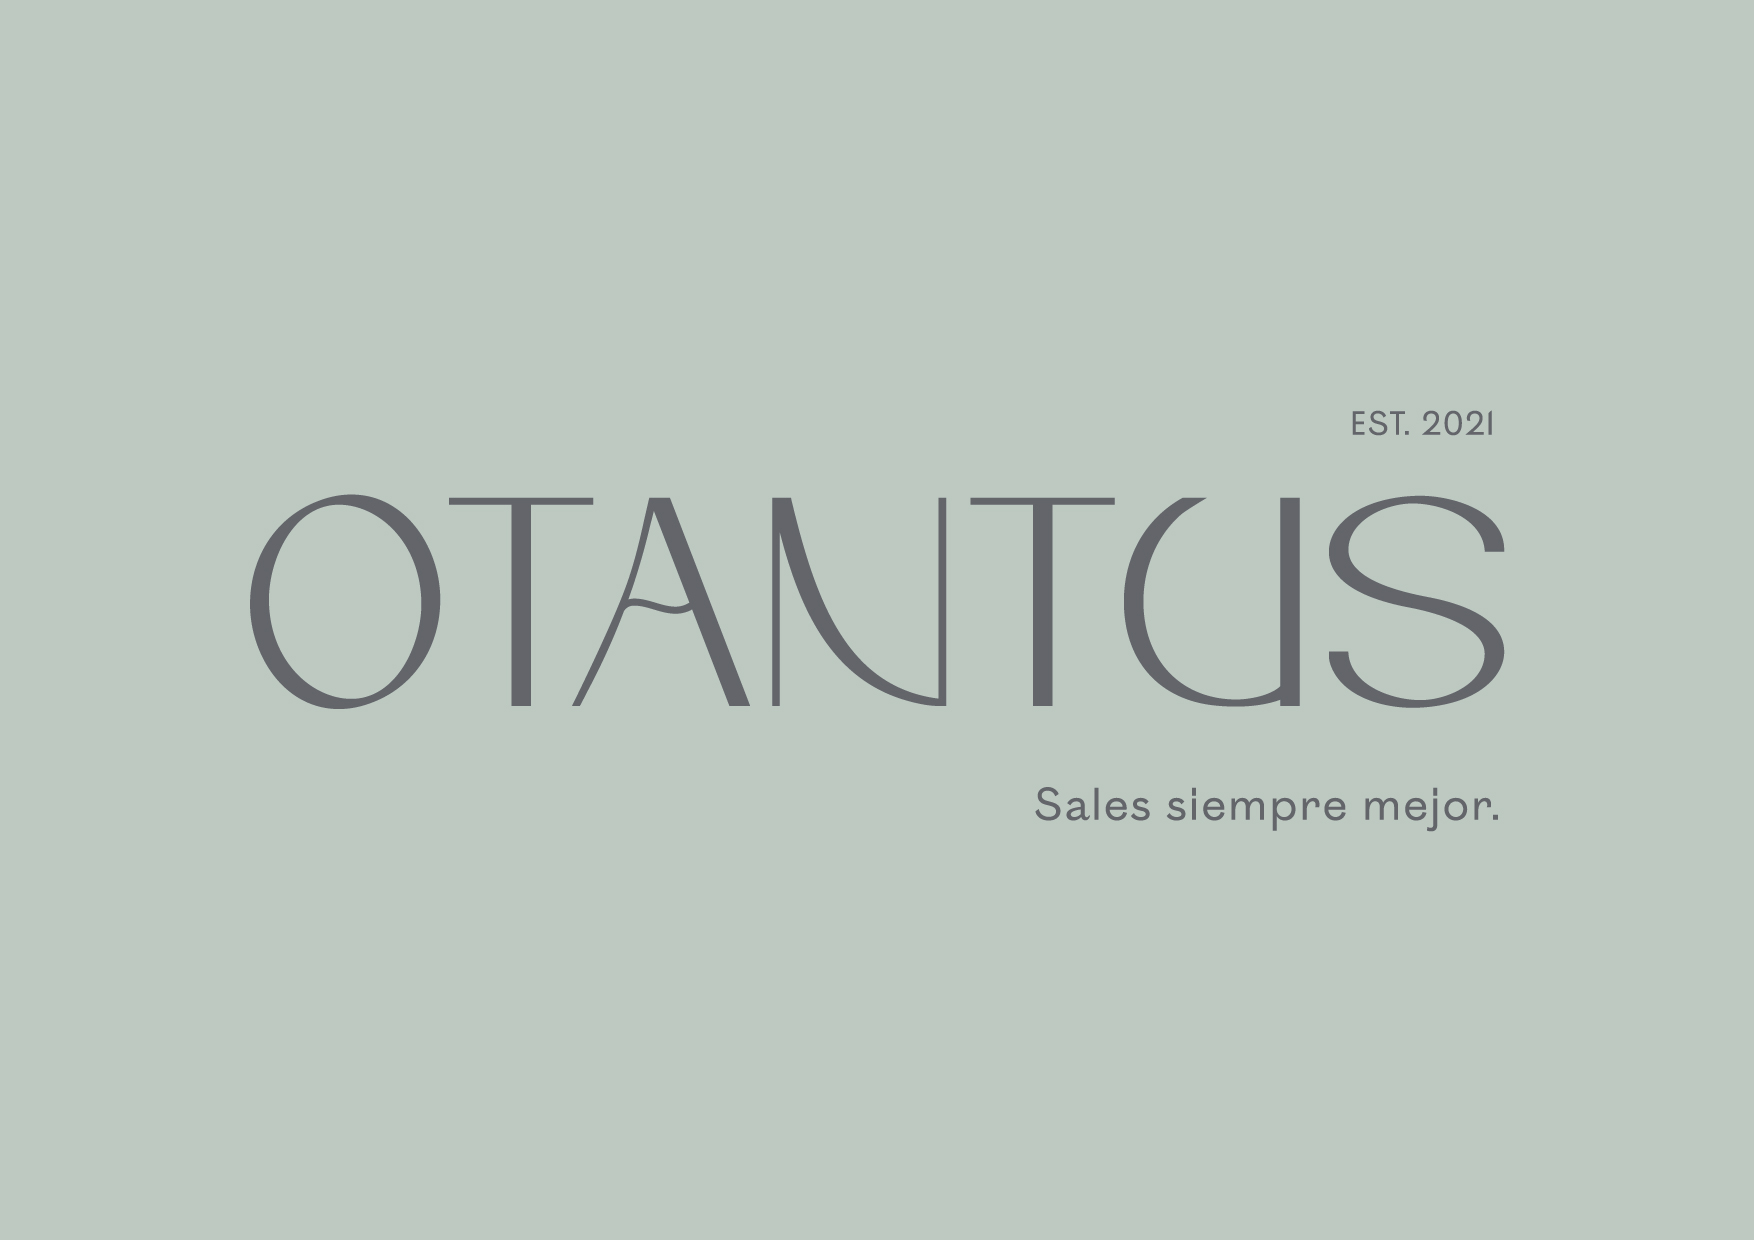 Otantus - El lugar del que sales siempre mejor. by Wanna - Creative Work